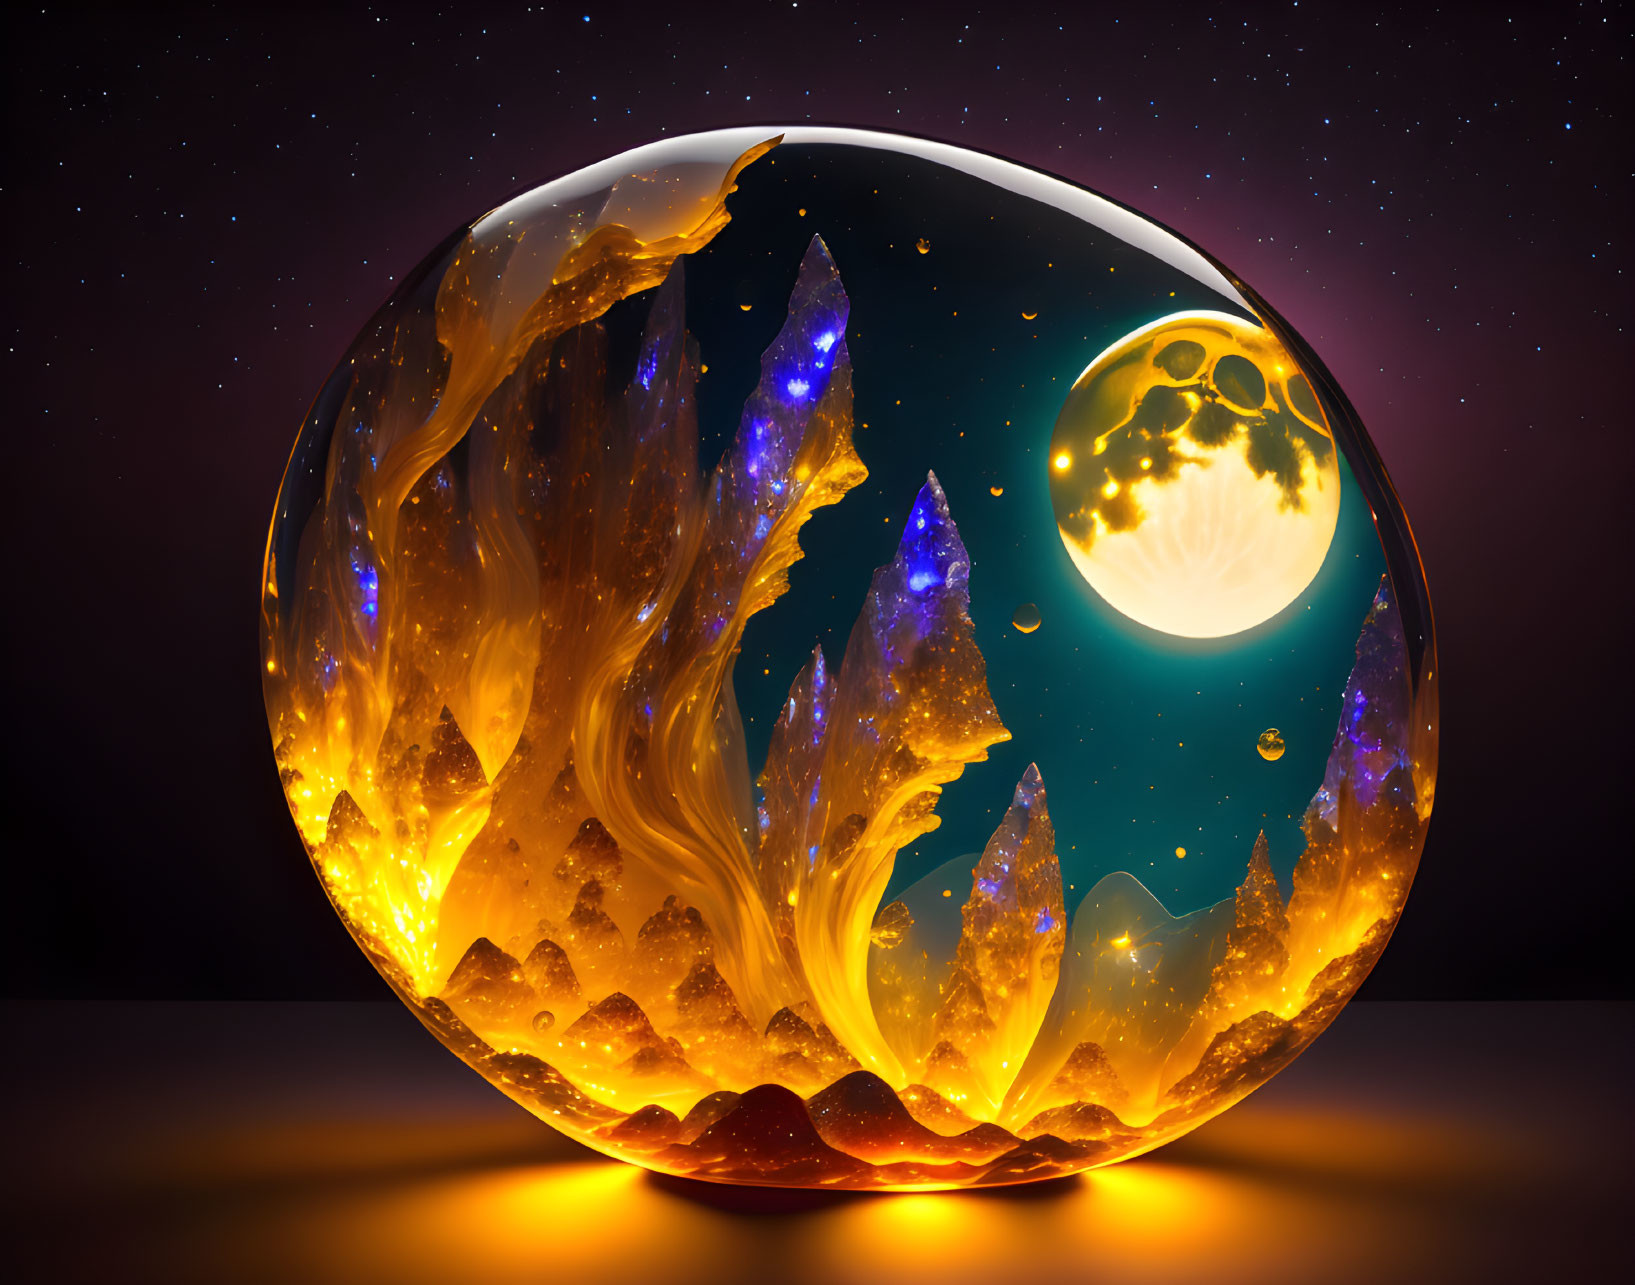 Digital artwork: Fiery crystal landscape in spherical bubble under starry sky